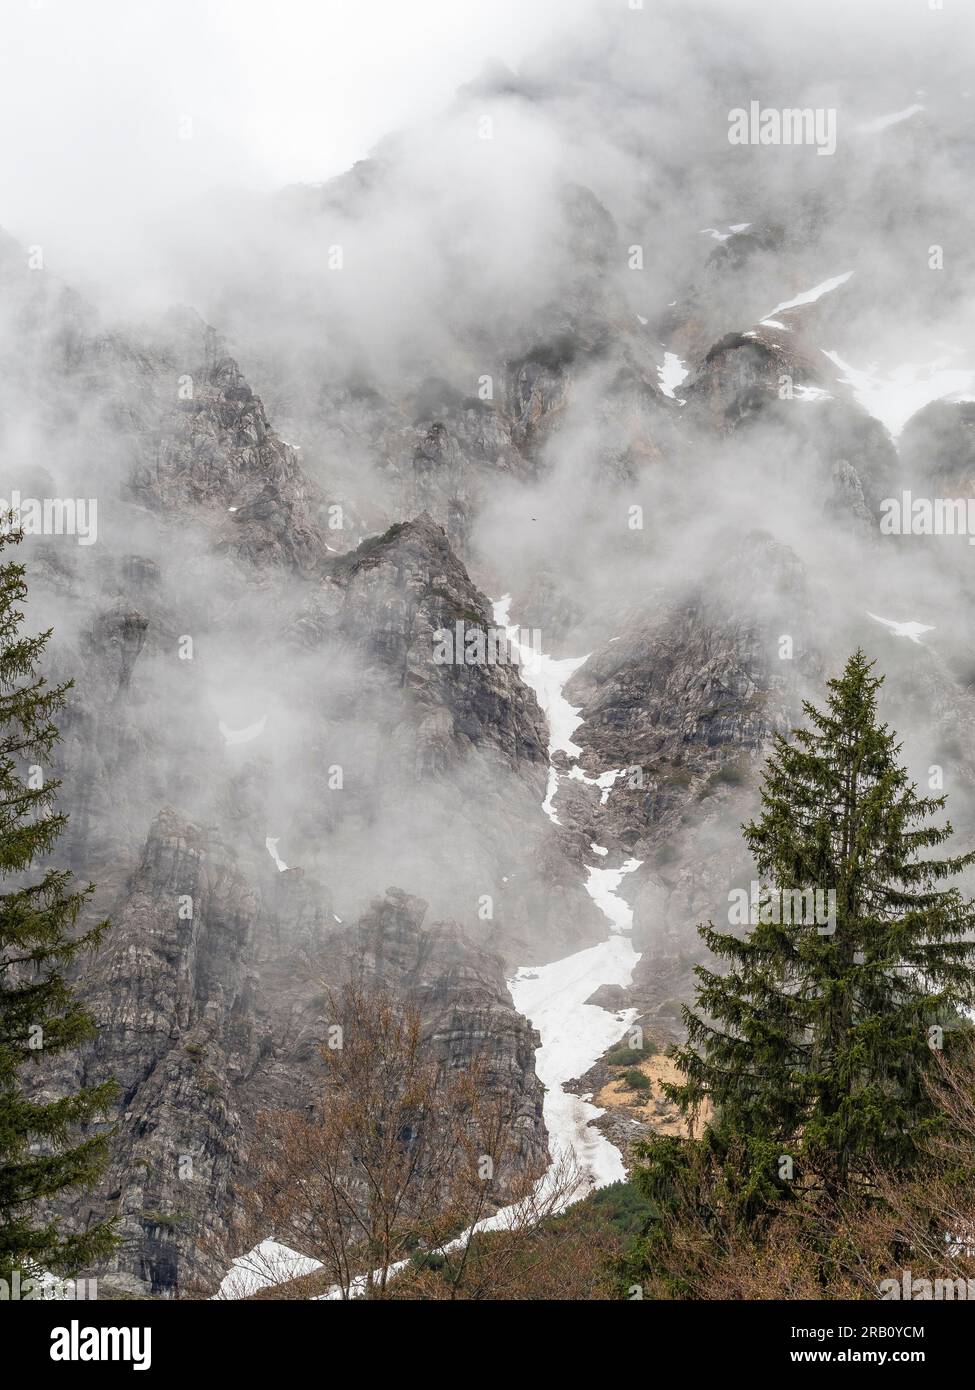 Vista sulle montagne Kaiser, una catena montuosa delle Alpi calcaree settentrionali nelle Alpi orientali. Si trova in Austria, in provincia di Tirolo, tra Kufstein e St Johann in Tirolo. Foto Stock